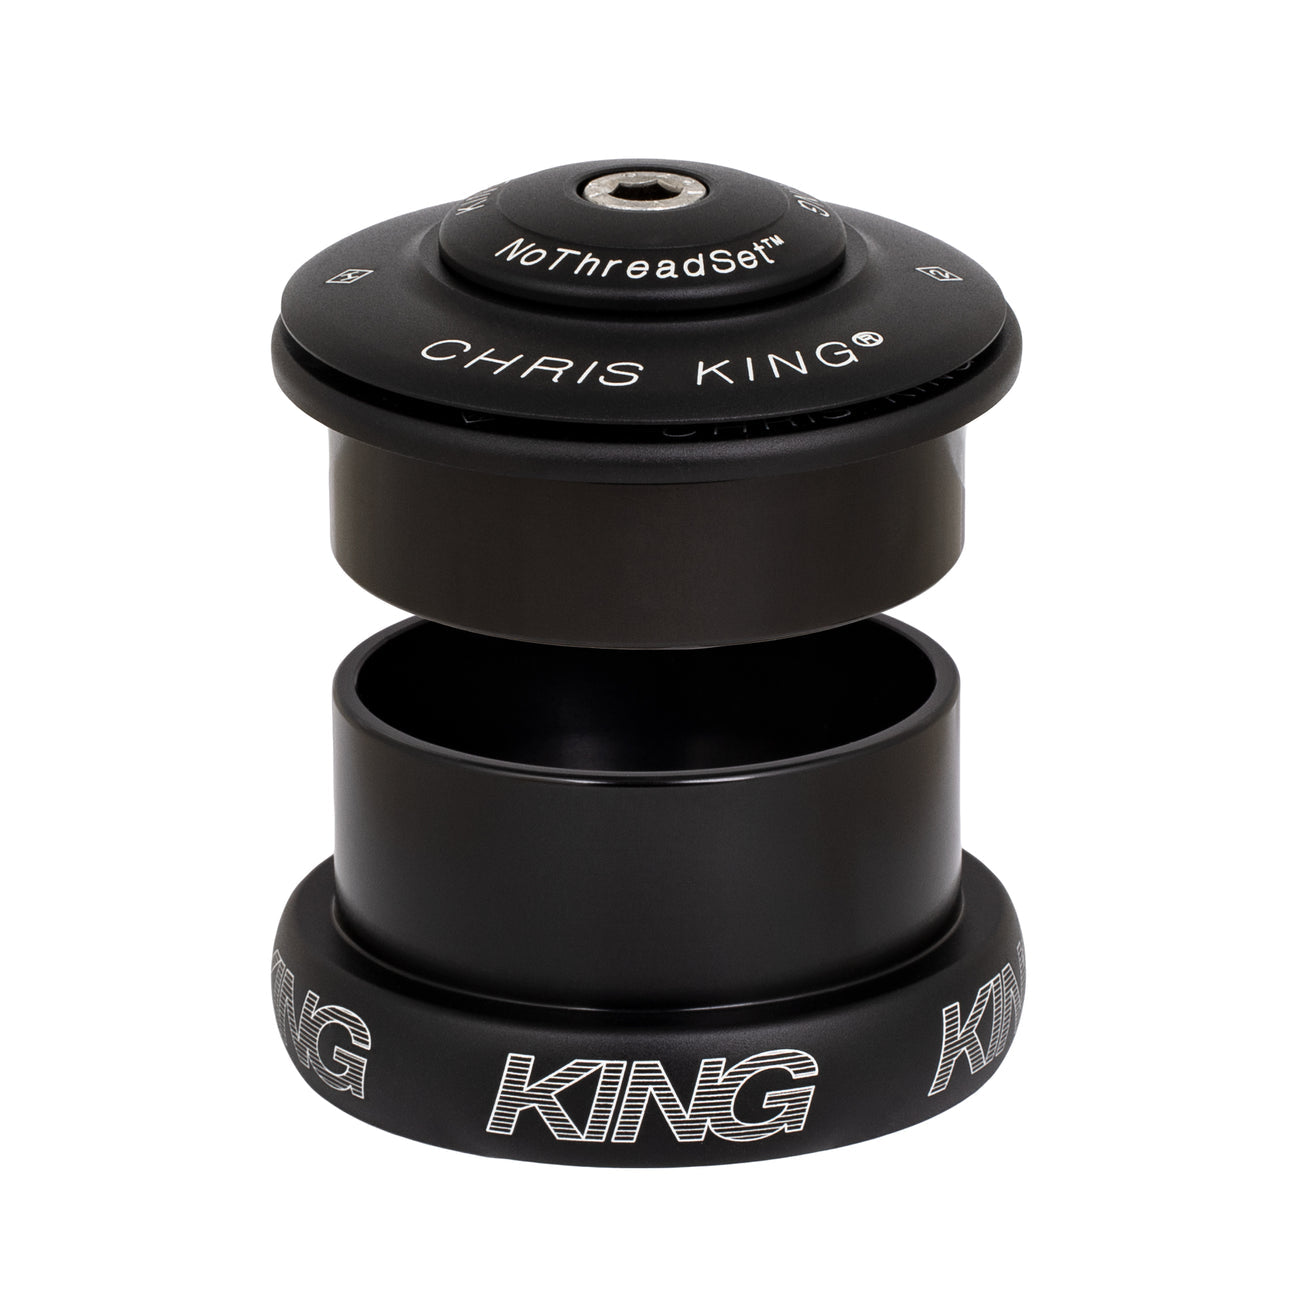 Chris King Inset 5 headset in matte black